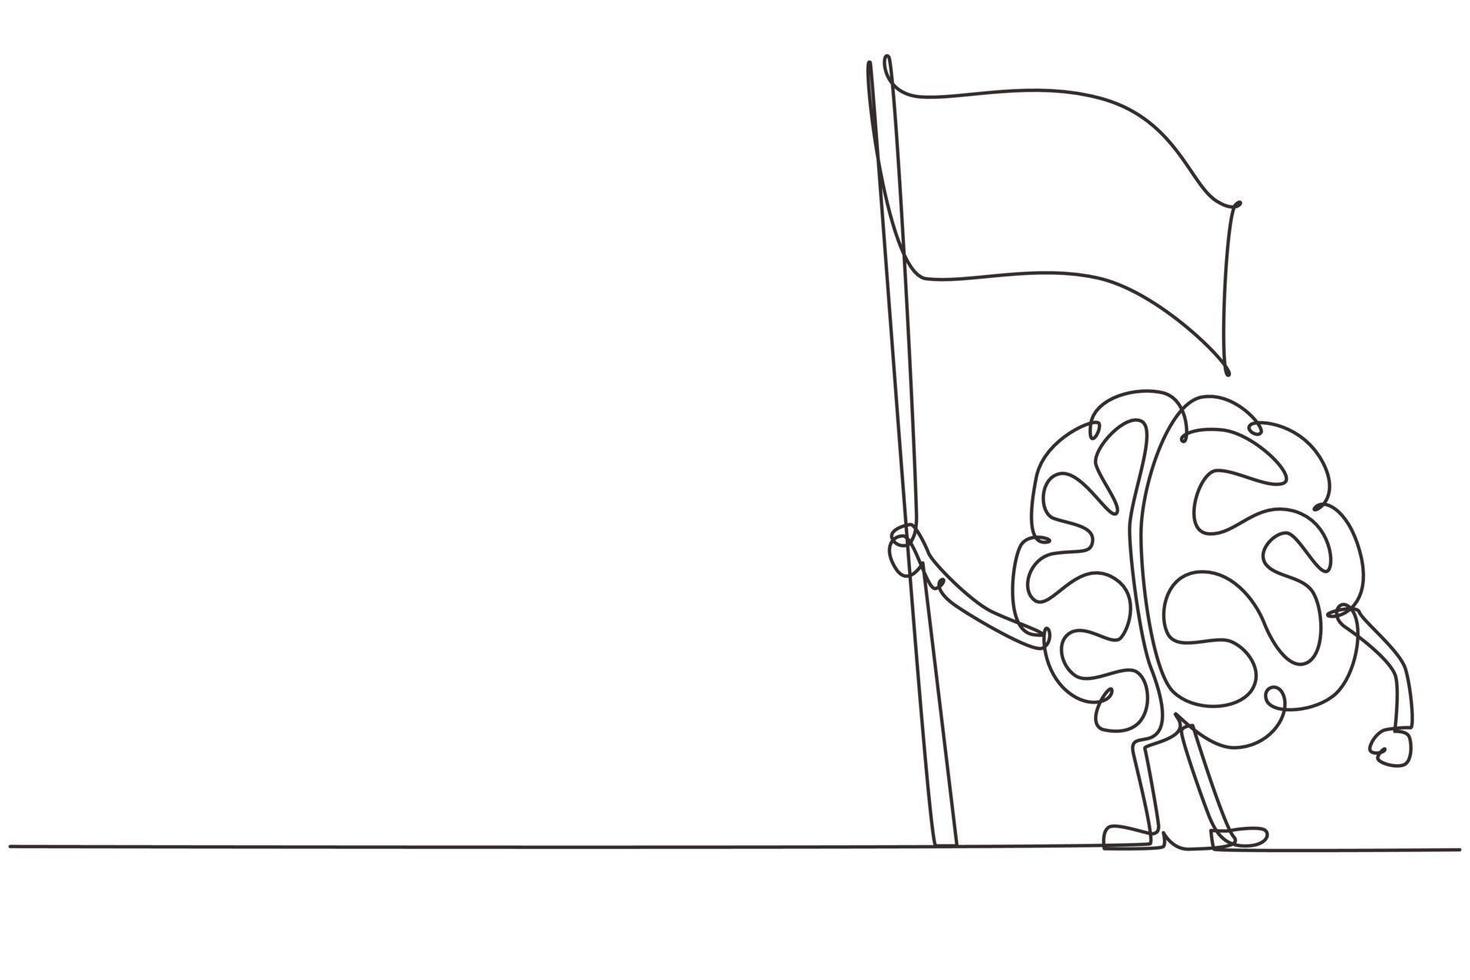 único desenho de uma linha do cérebro dos desenhos animados em pé com bandeira, órgão do sistema nervoso humano engraçado. design plano do cérebro do personagem para o tema da educação. ilustração em vetor gráfico de desenho de linha contínua